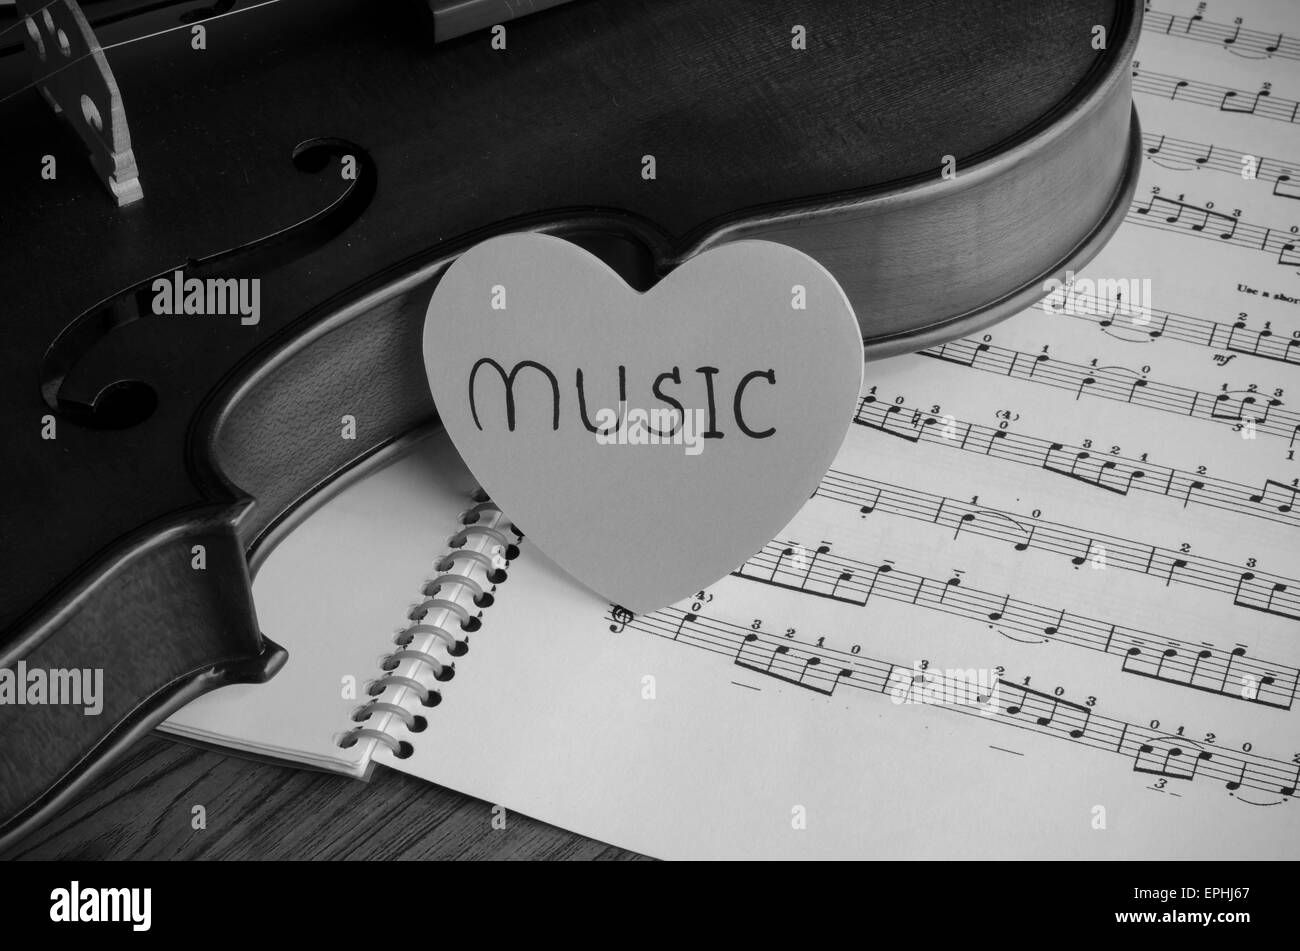 classic black and white violin Stock Photo